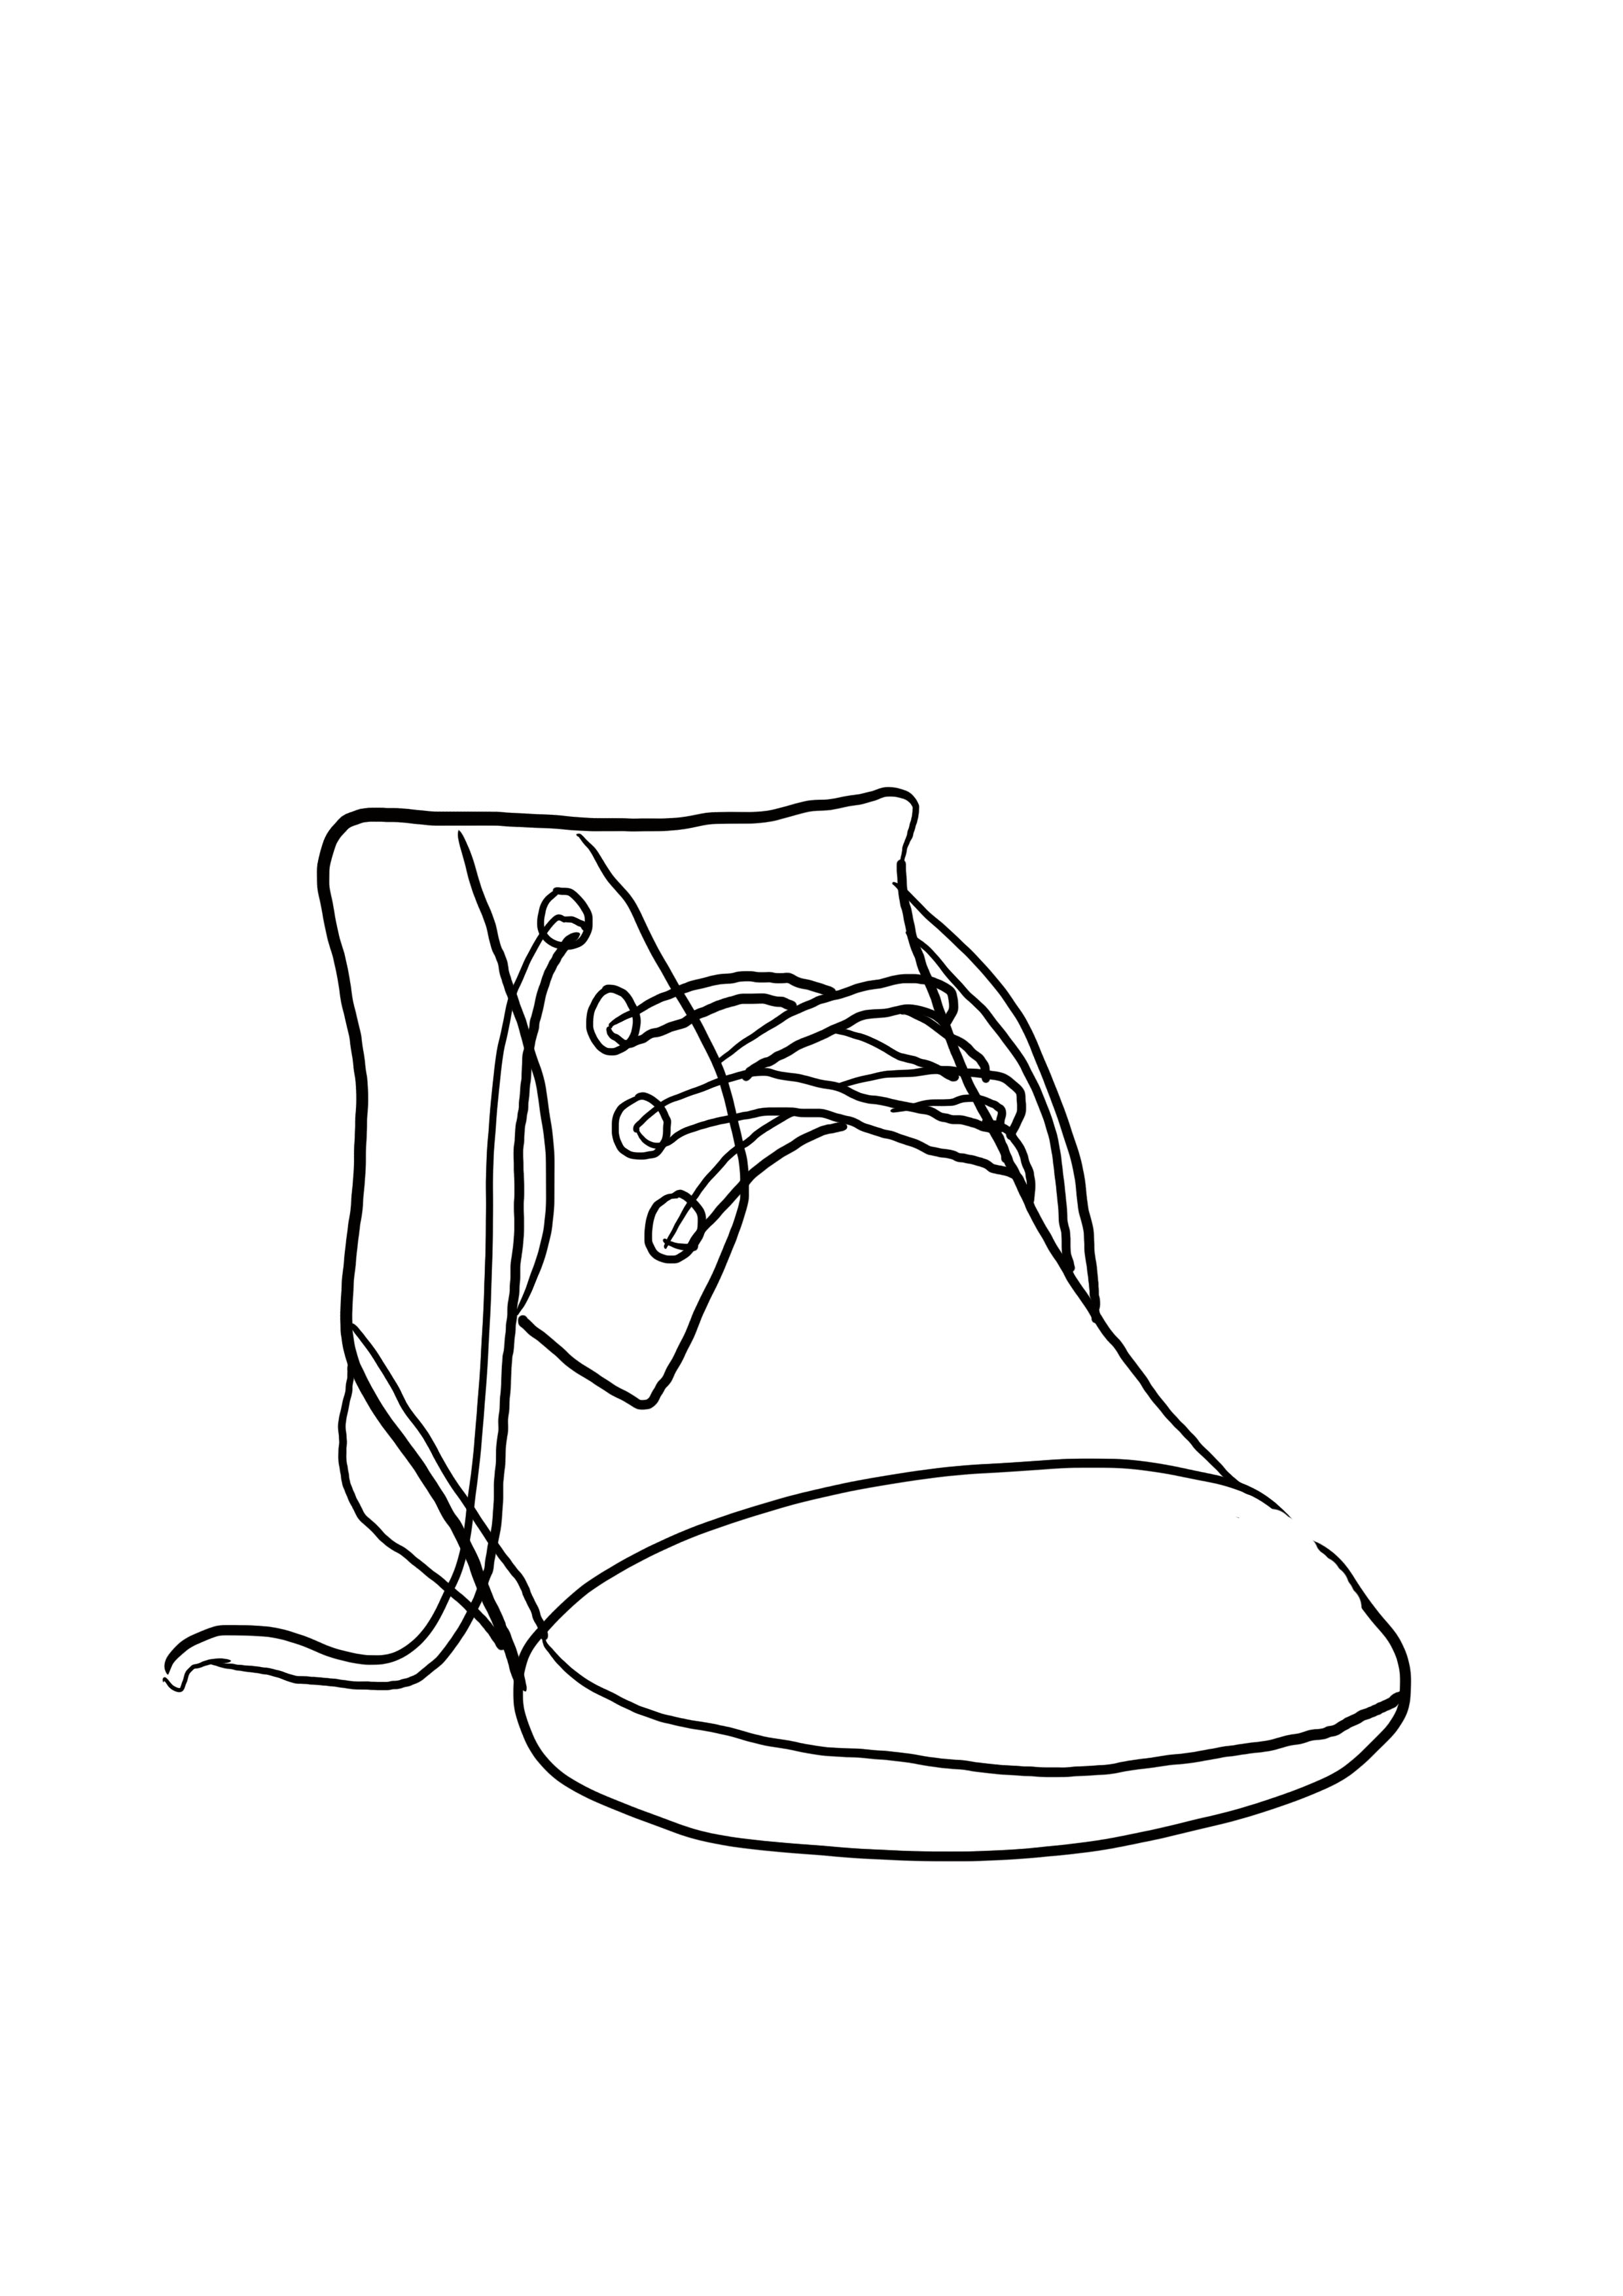 dessin difficile : les lacets de la chaussure